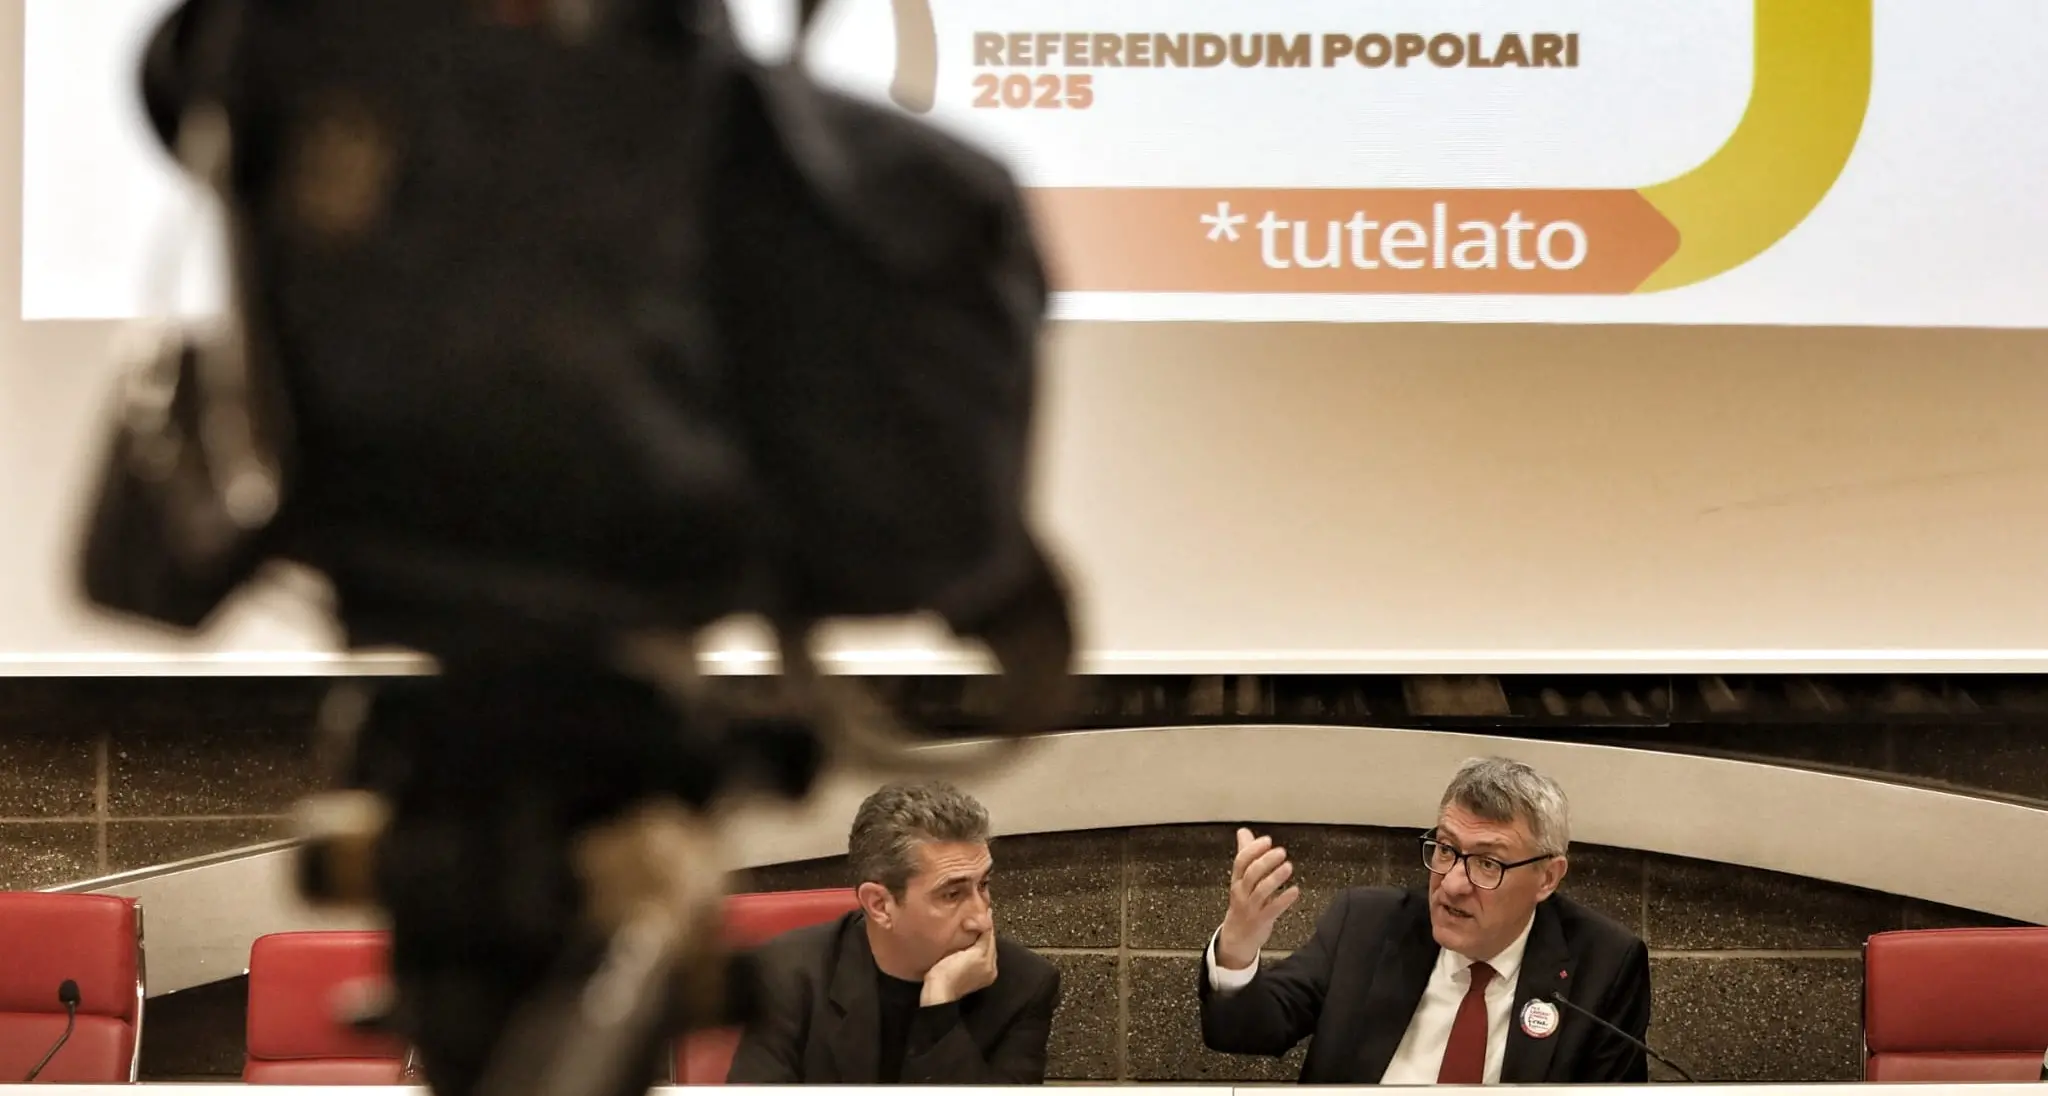 Cgil: 17 maggio conferenza stampa con Landini su tesseramento, referendum e mobilitazione